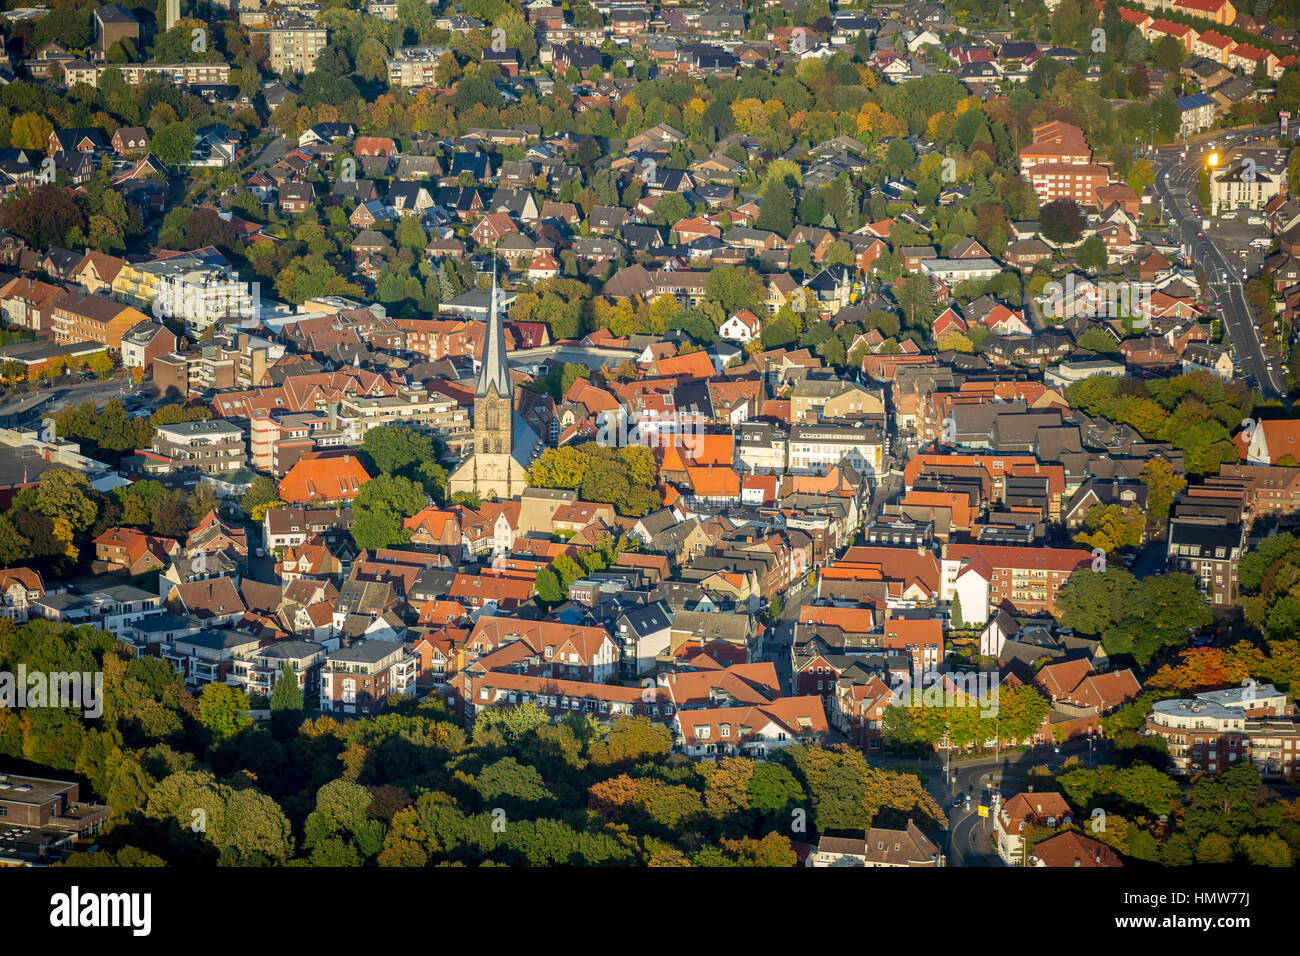 Historischen Zentrum der Stadt Werne, Luftaufnahme, Werne, Ruhrgebiet, Nordrhein-Westfalen, Deutschland Stockfoto